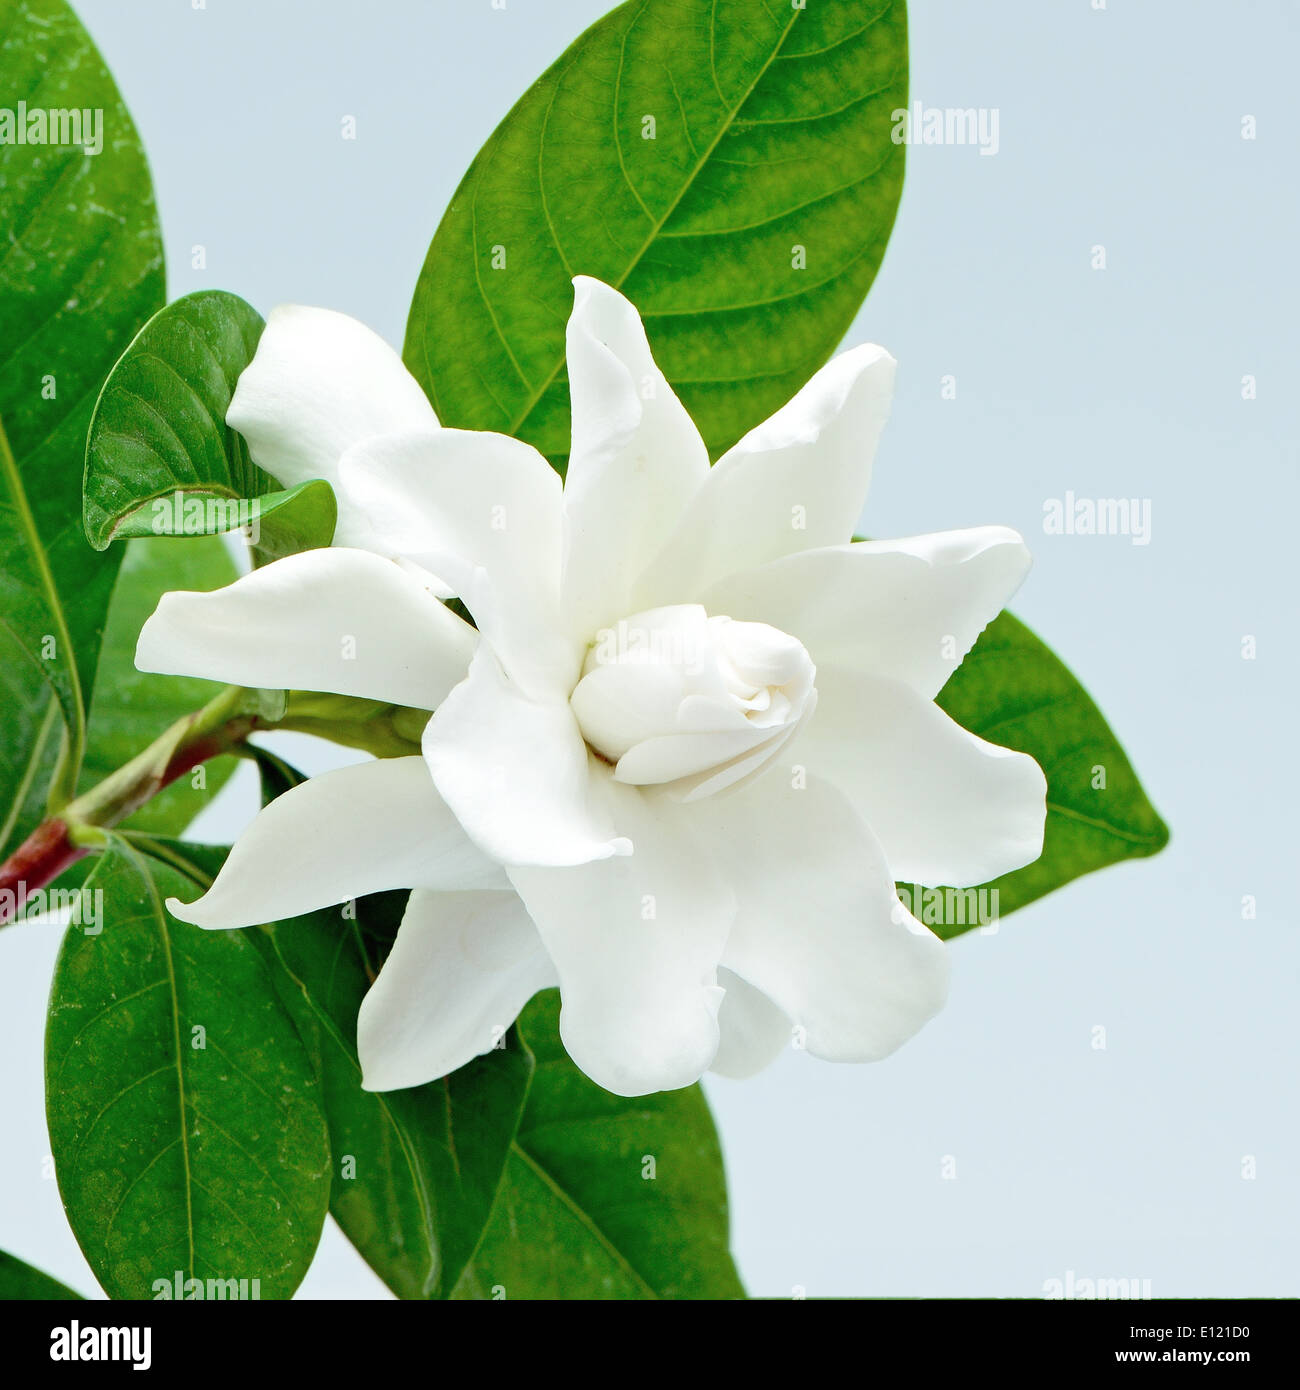 White Gardenia Blume oder Cape Jasmin (Gardenia Jasminoides), isoliert auf  einem blauen Hintergrund Stockfotografie - Alamy